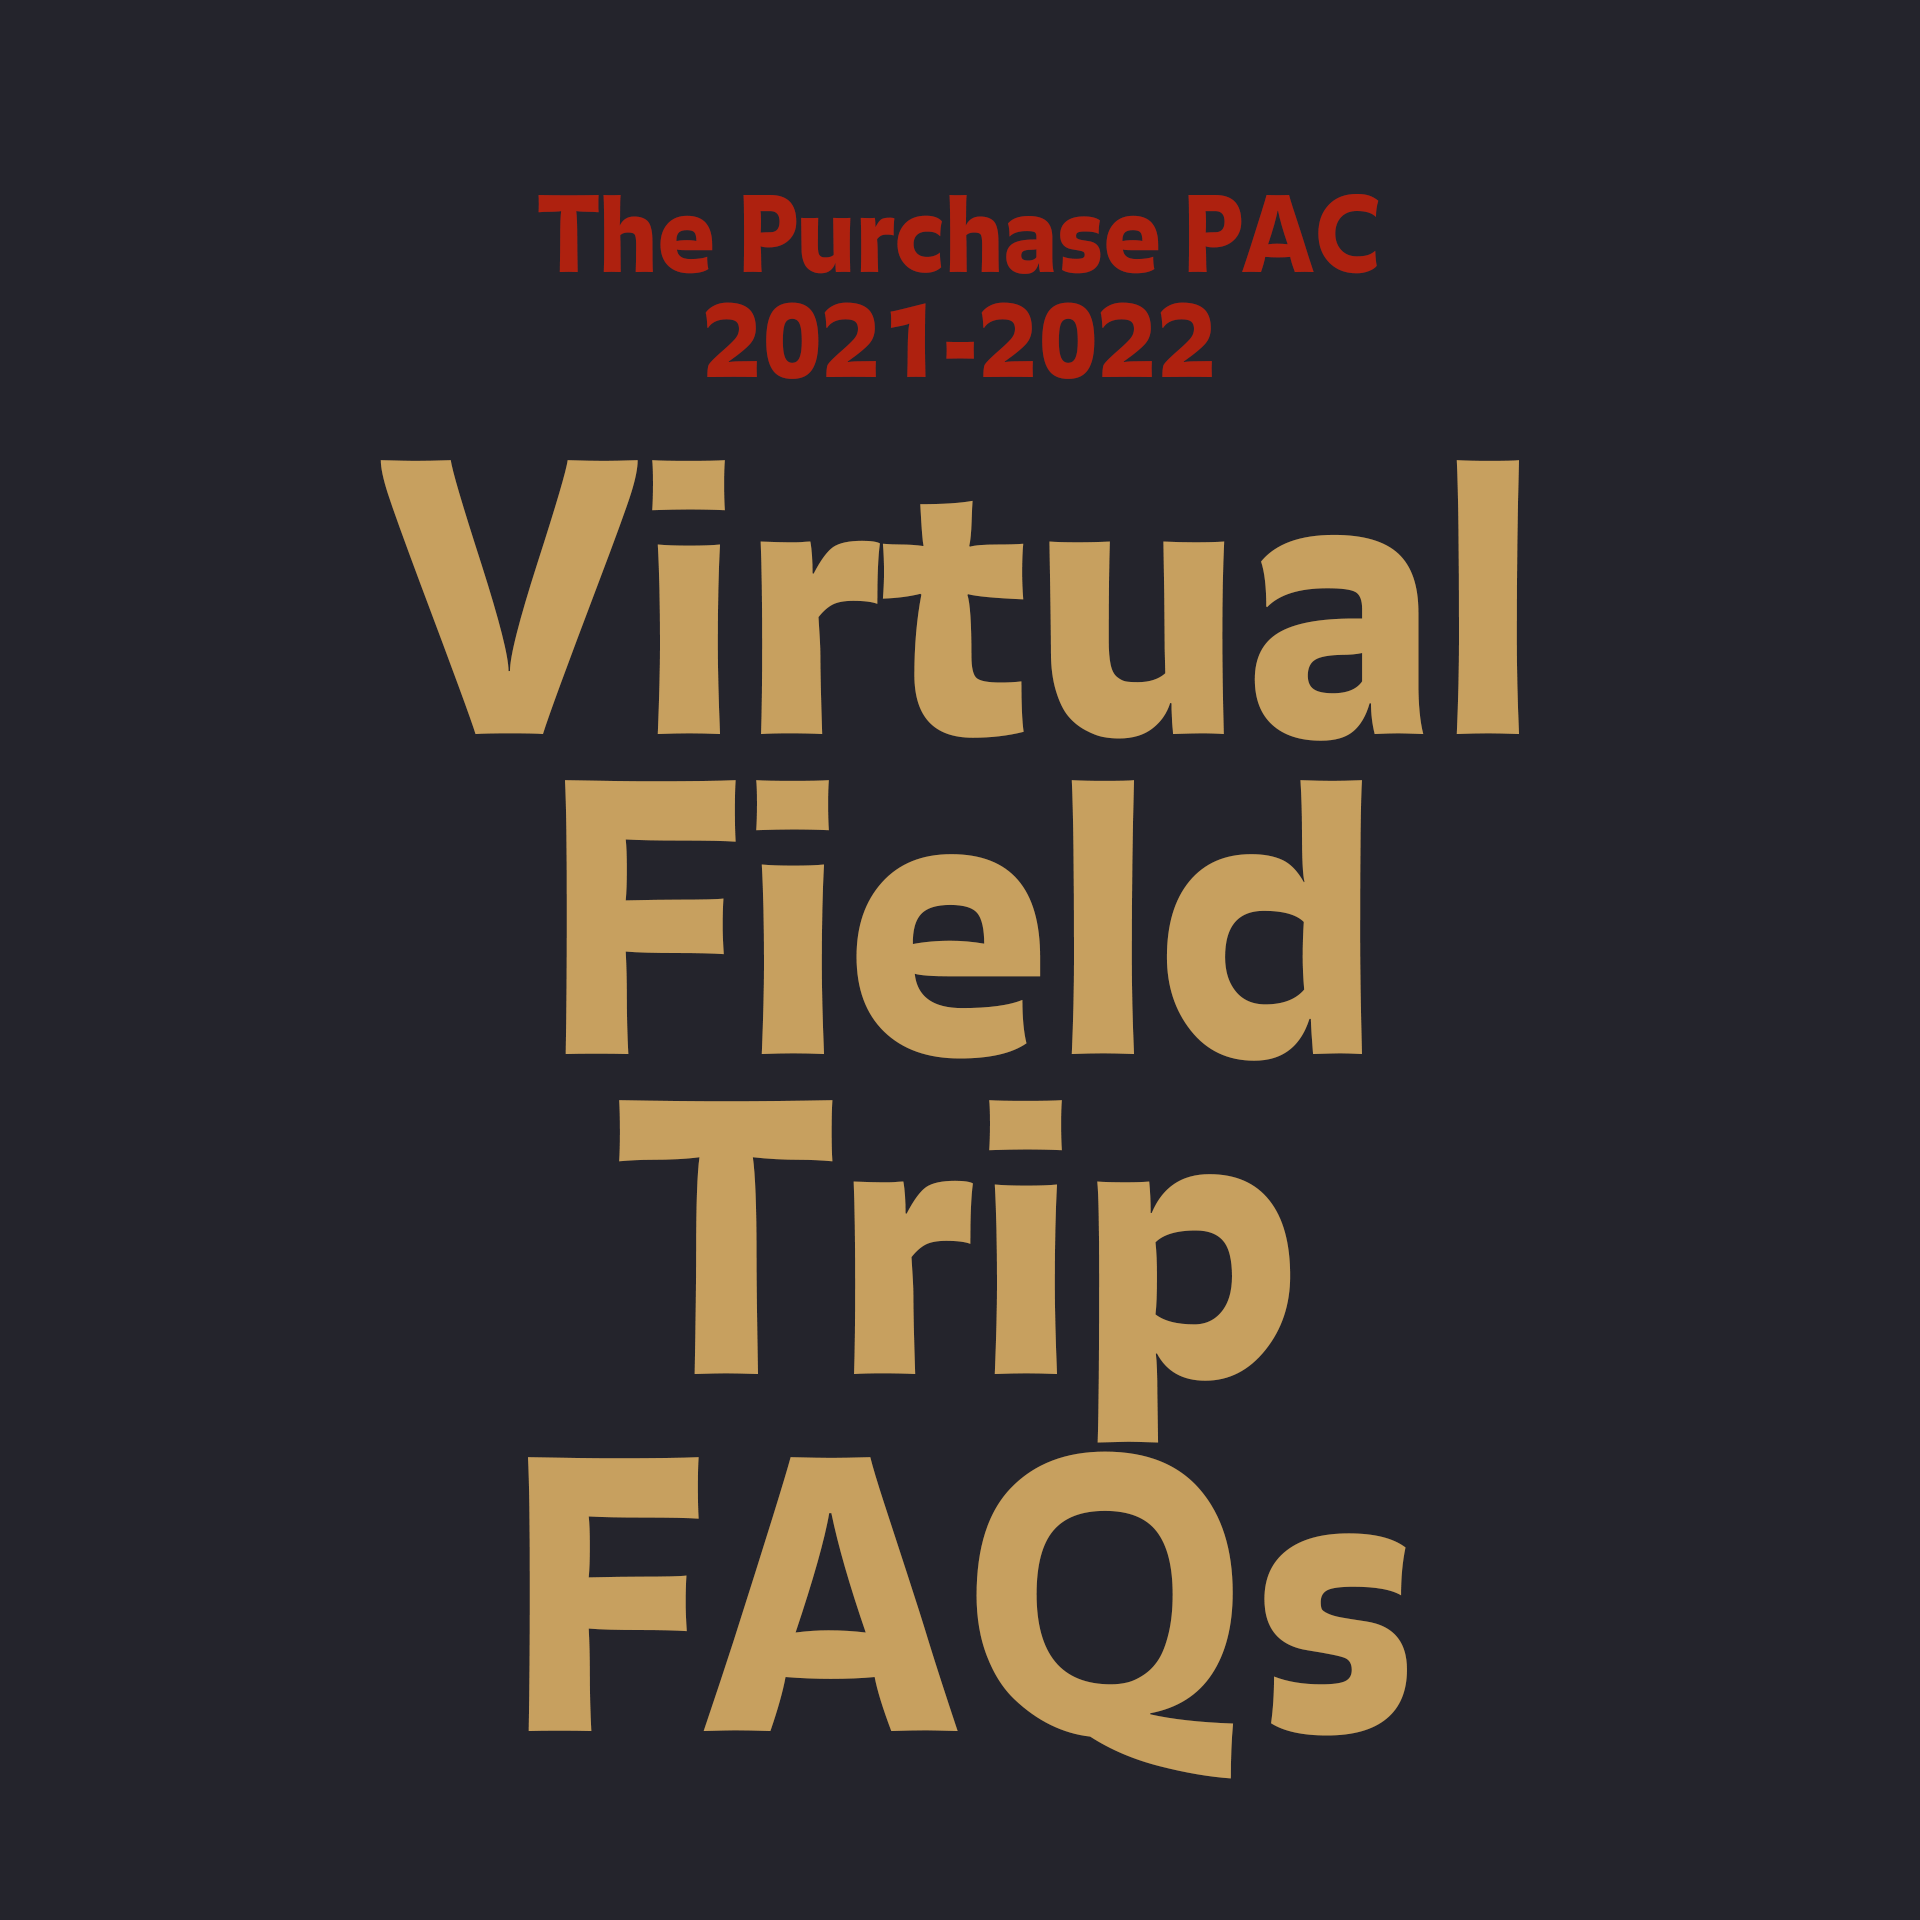 Virtual Field Trip FAQs